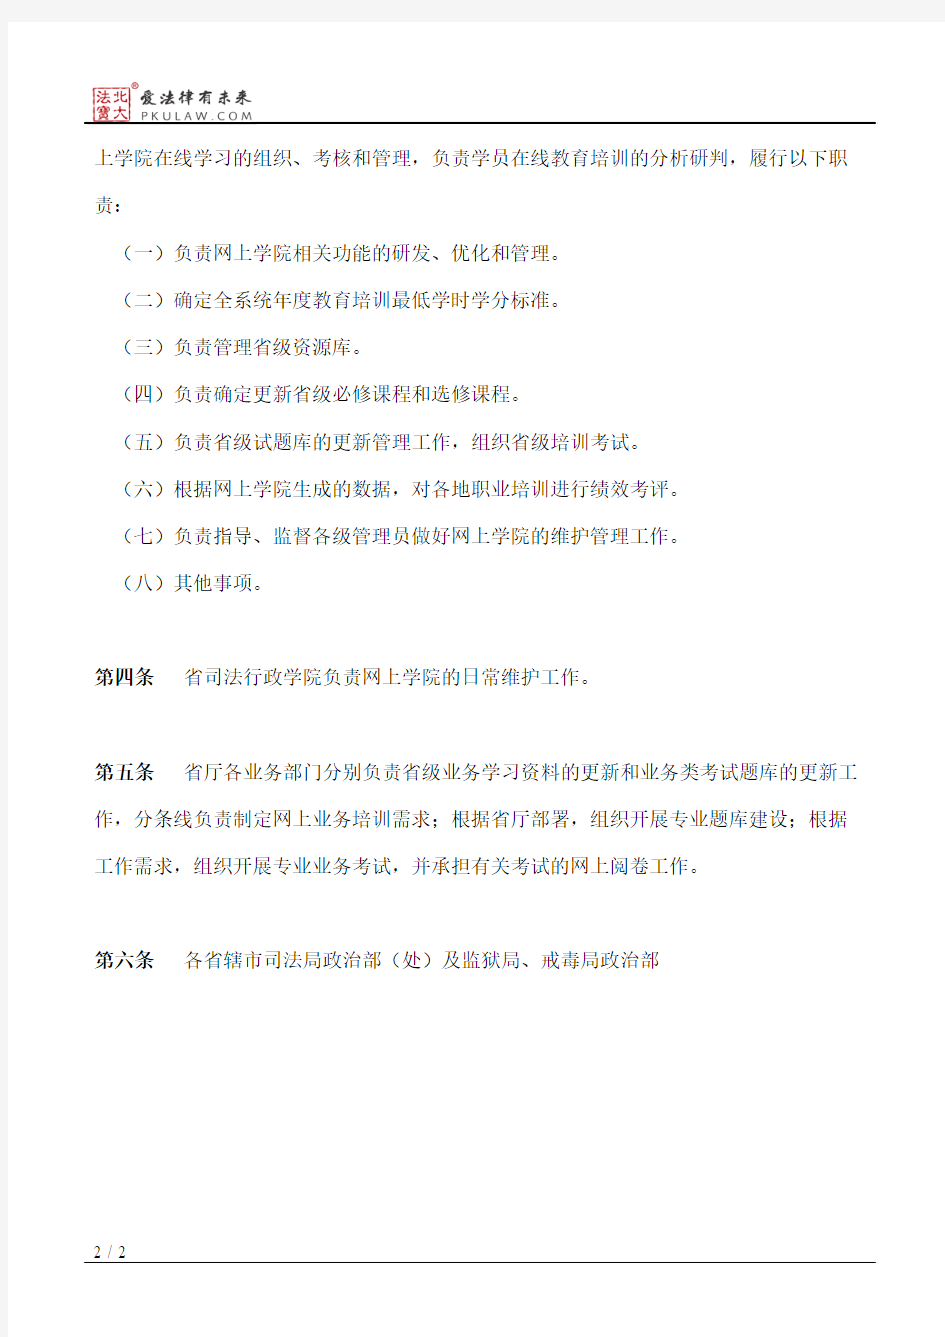 江苏省司法行政网上学院管理使用办法(试行)